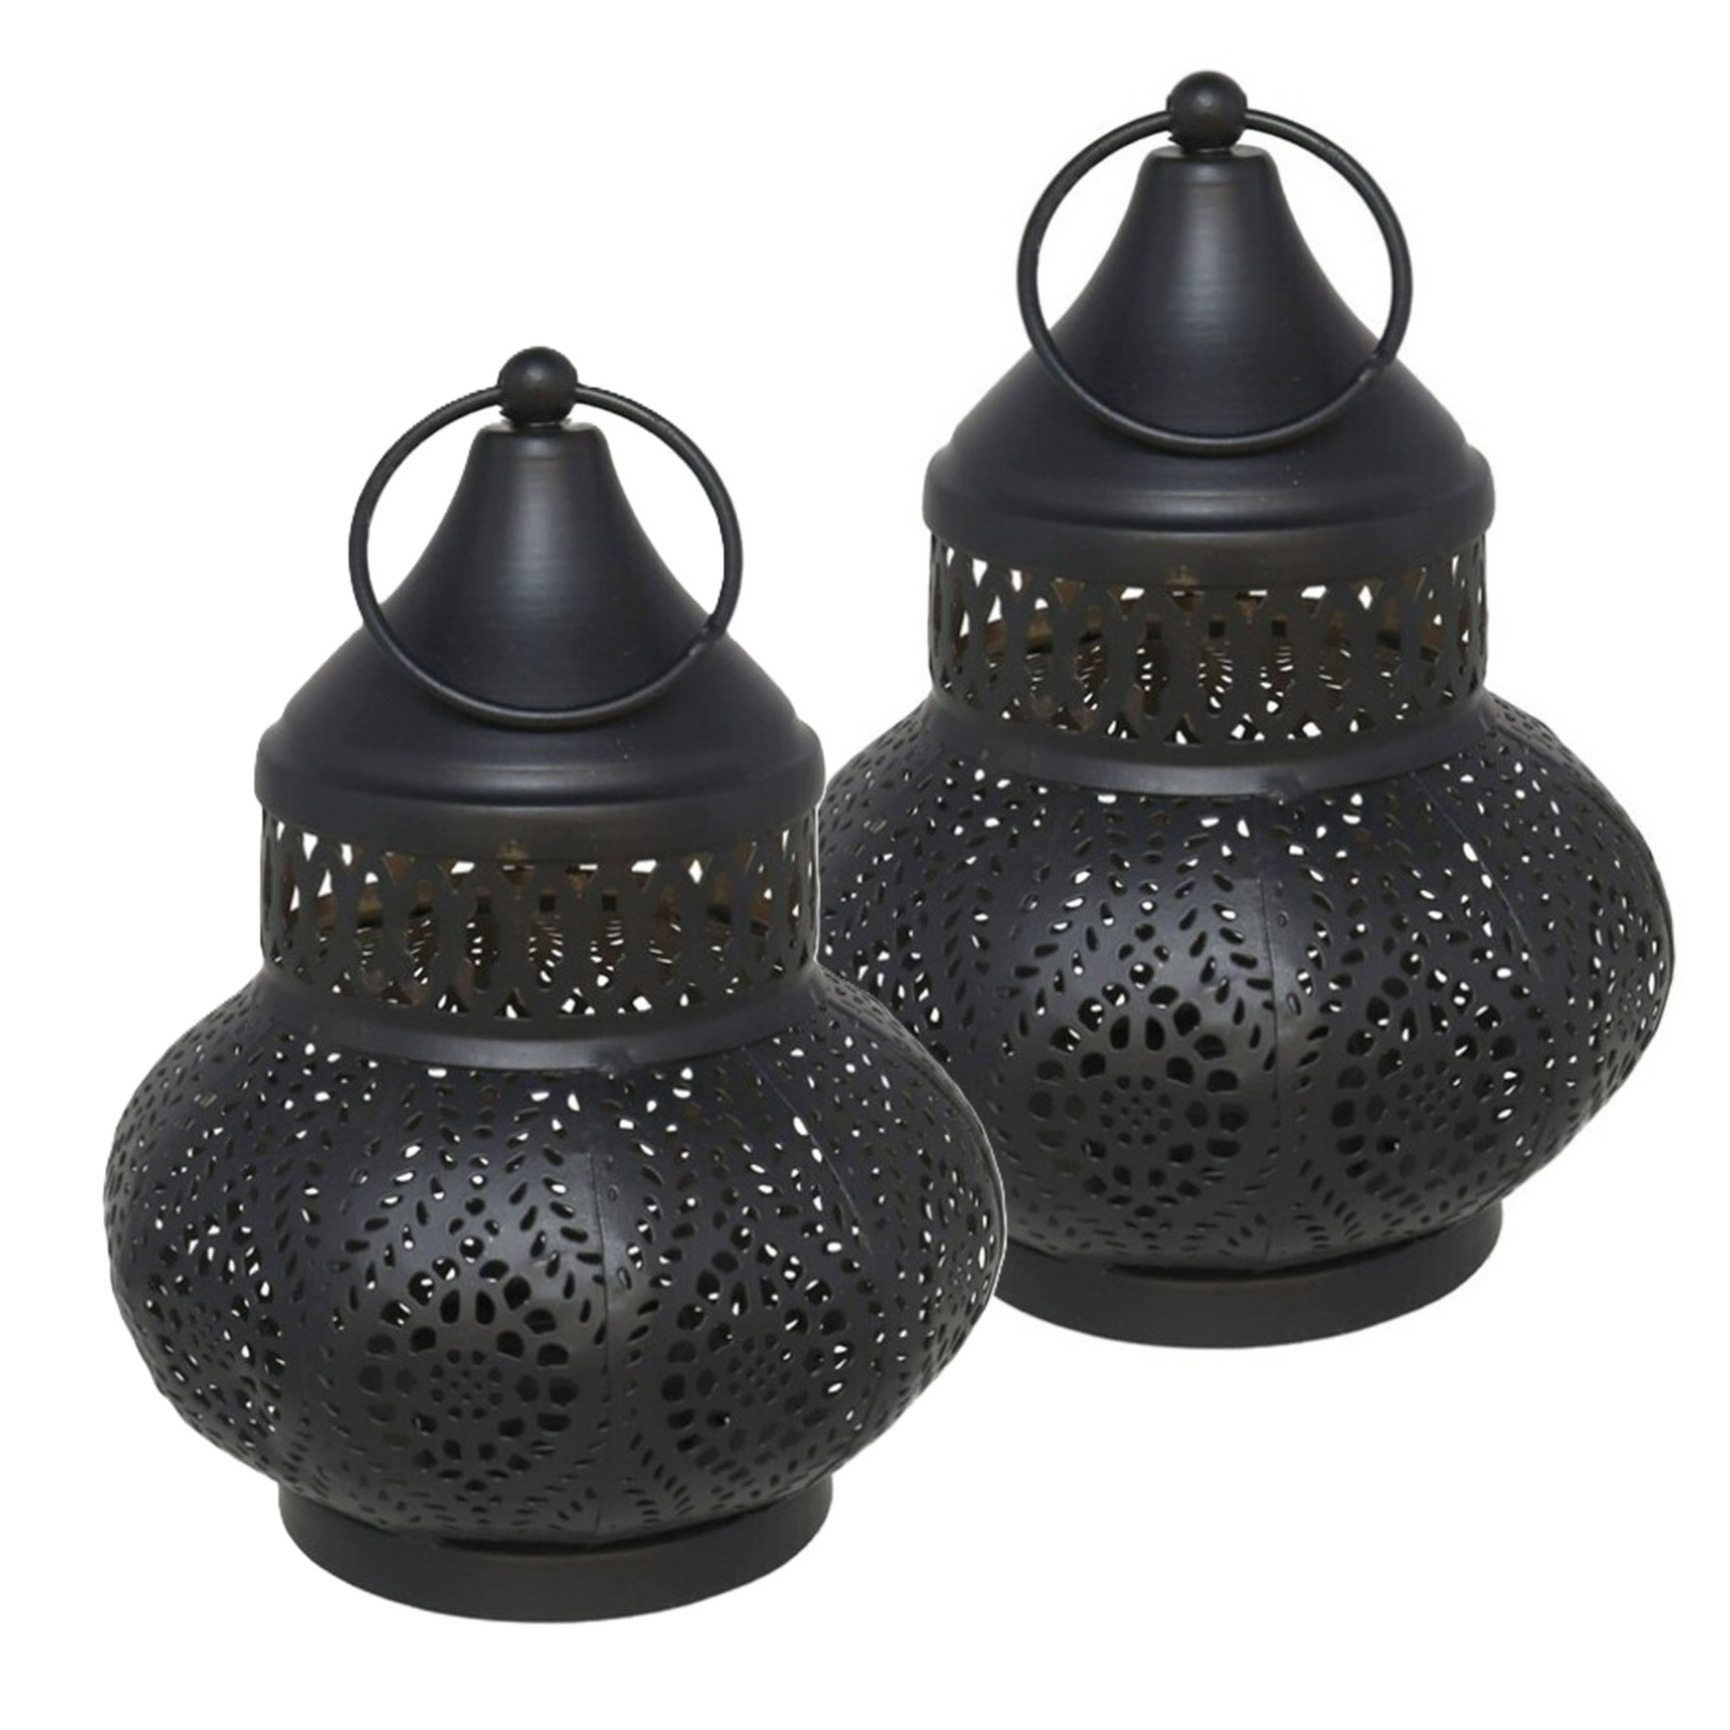 Tuin deco lantaarn - 2x - Marokkaanse sfeer stijl - zwart/goud - D12 x H16 cm - metaal - buitenverlichting?- buitenverlichting